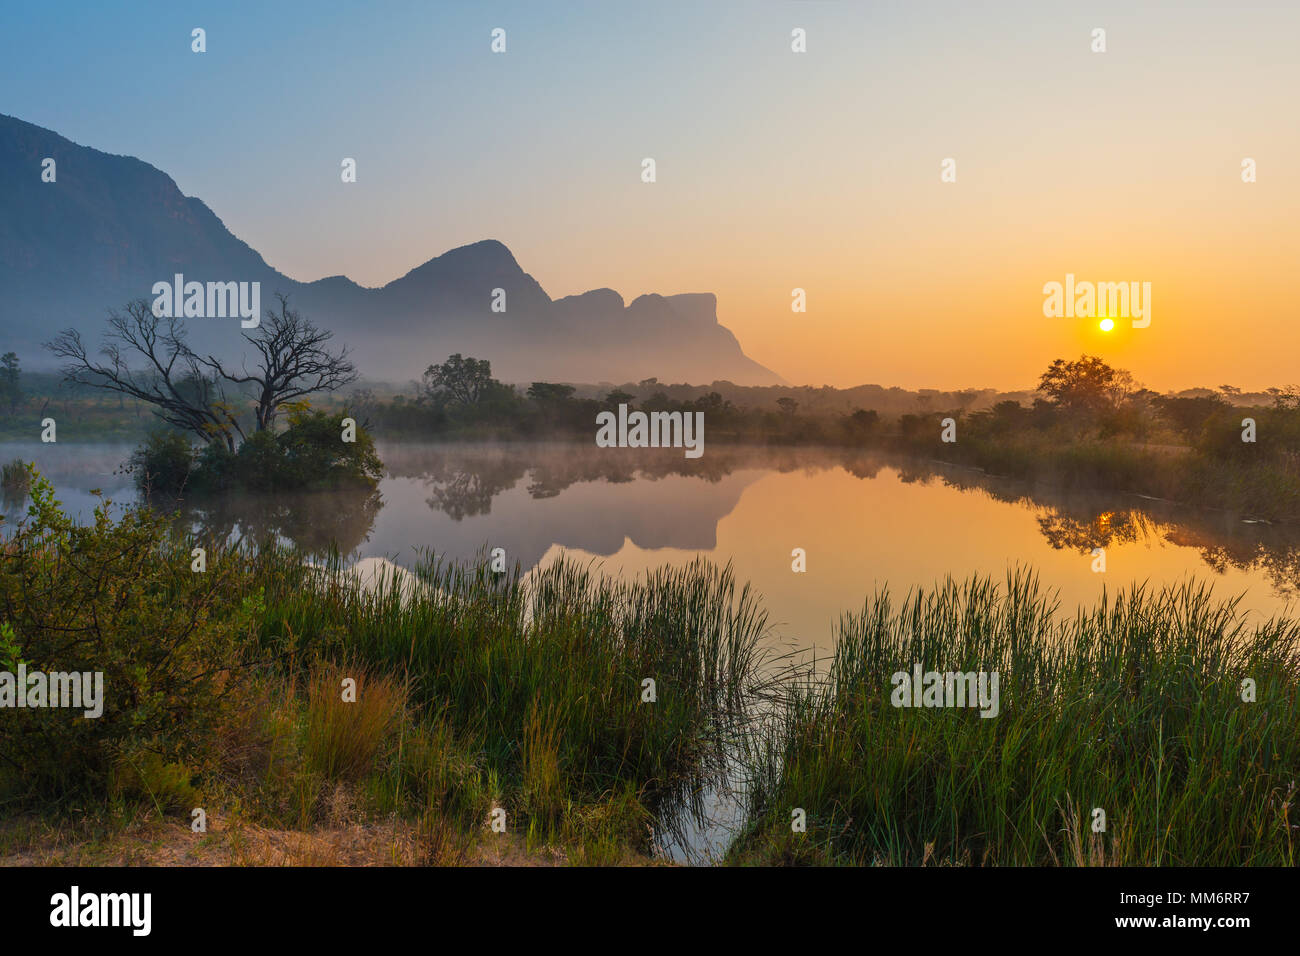 Amanecer con el pico de la montaña Hanglip reflejando en un pantano del lago en el interior de la reserva de caza safari Entabeni, provincia de Limpopo, Sudáfrica. Foto de stock